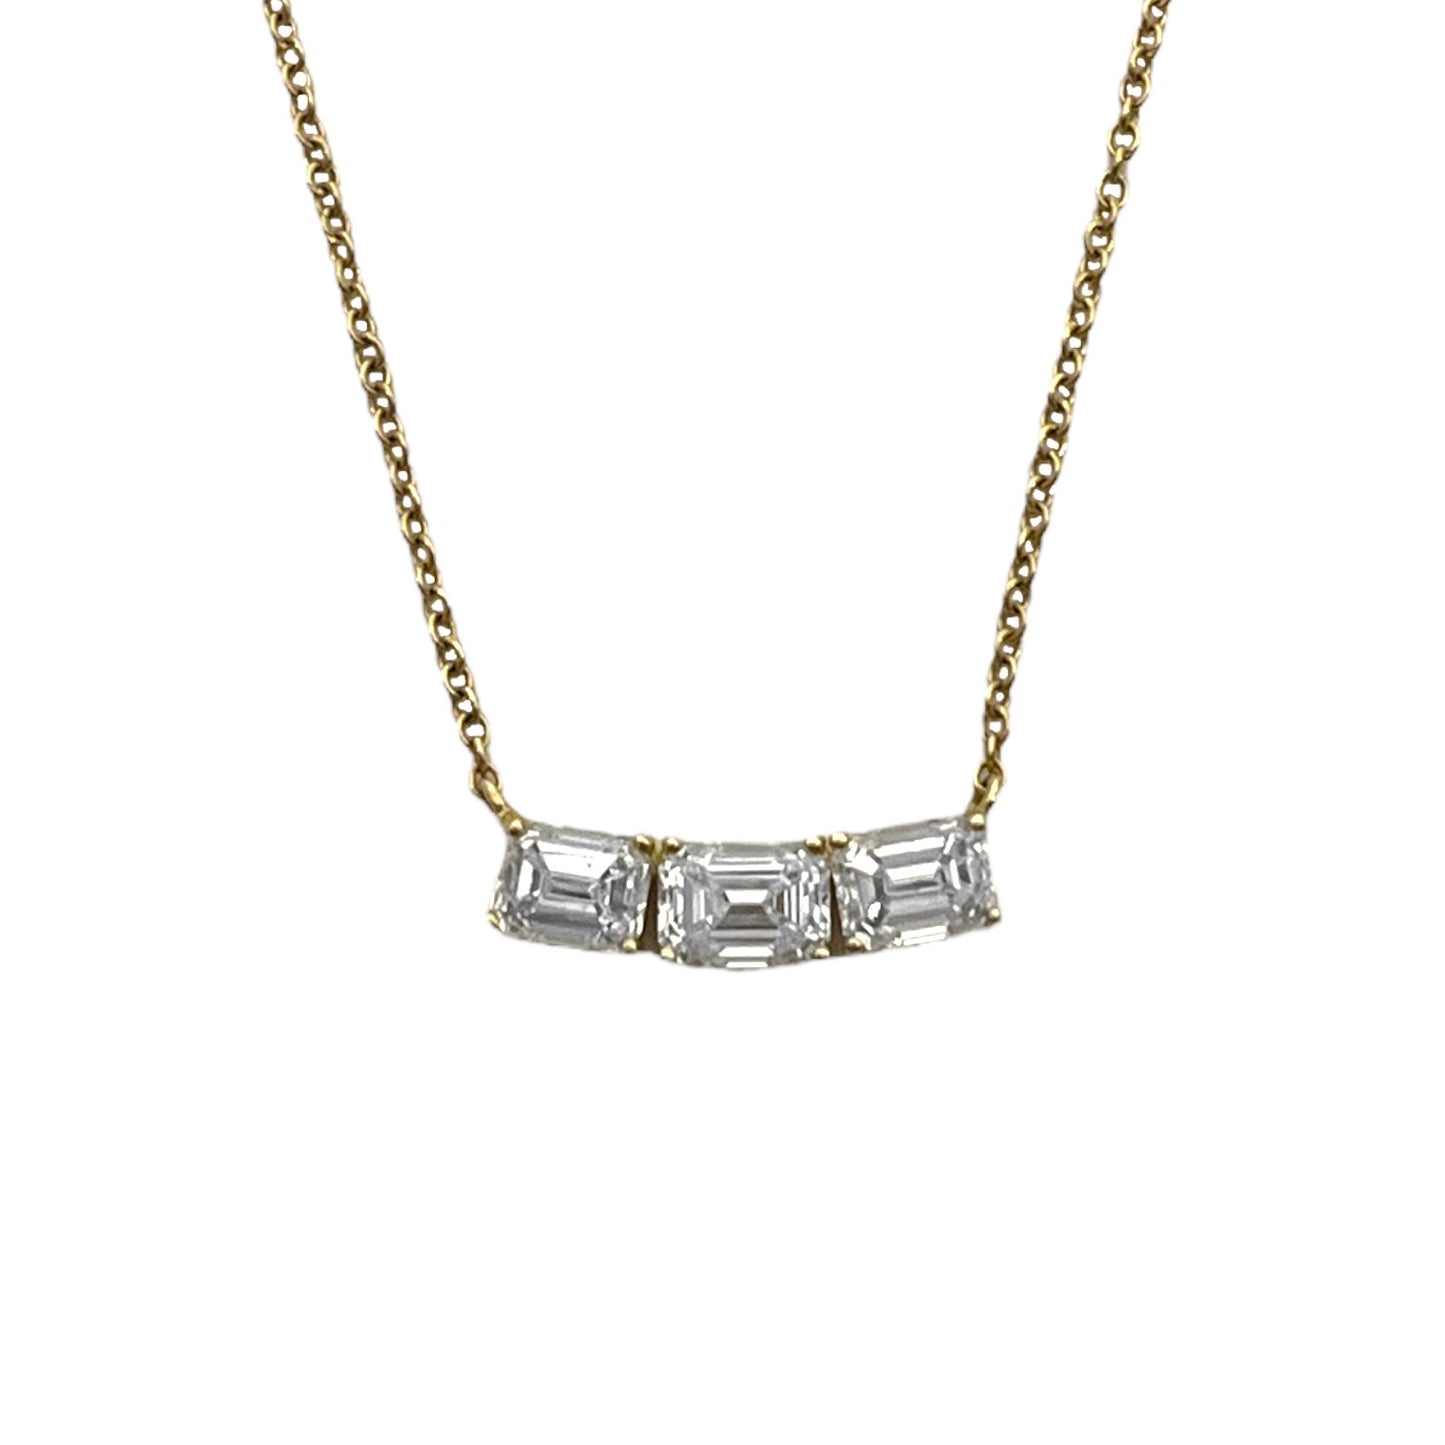 Triple Emerald Cut Diamond Necklace